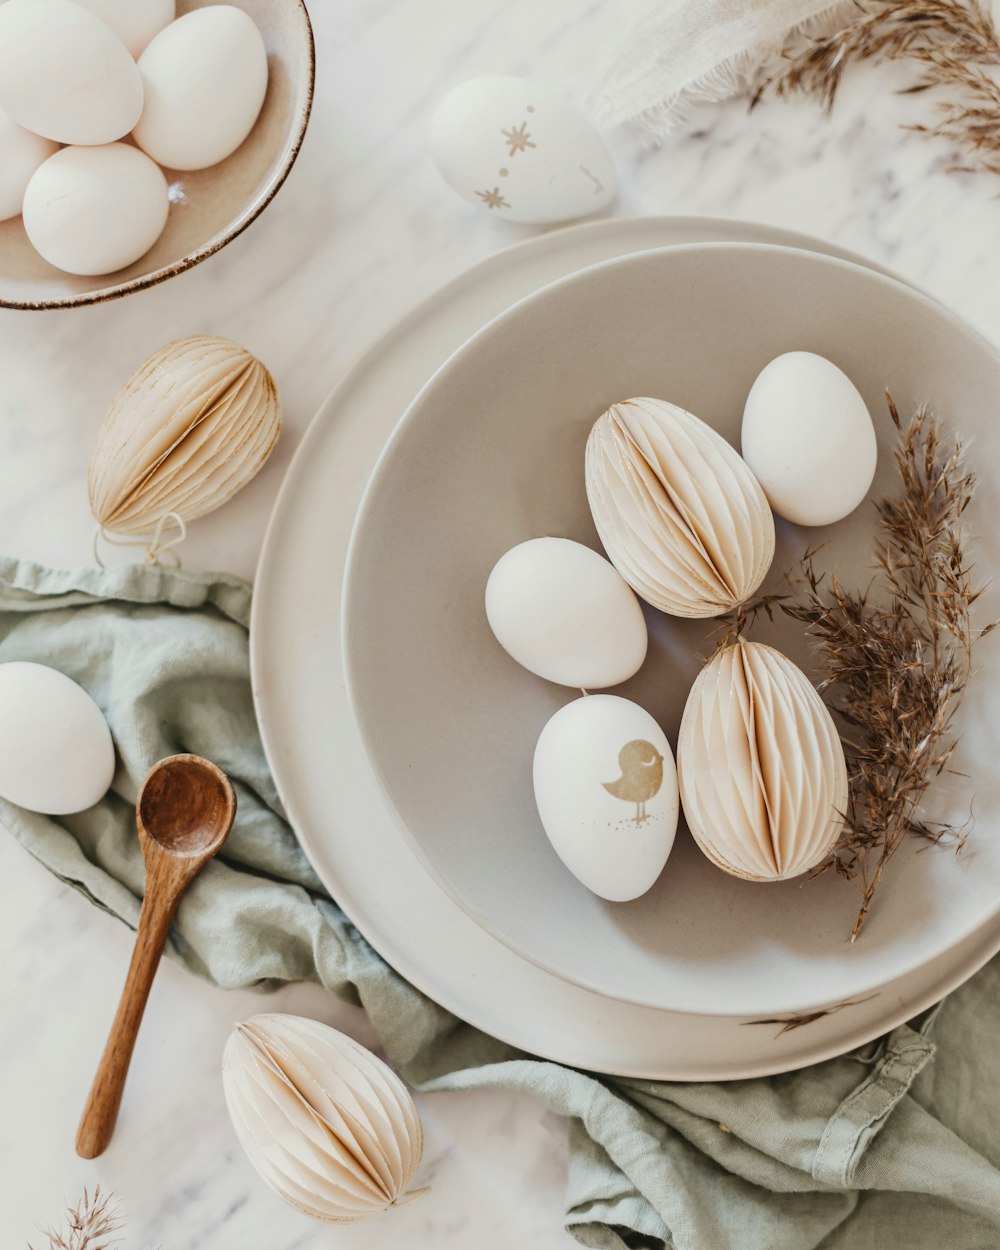 guscio d'uovo bianco su piatto di ceramica bianca